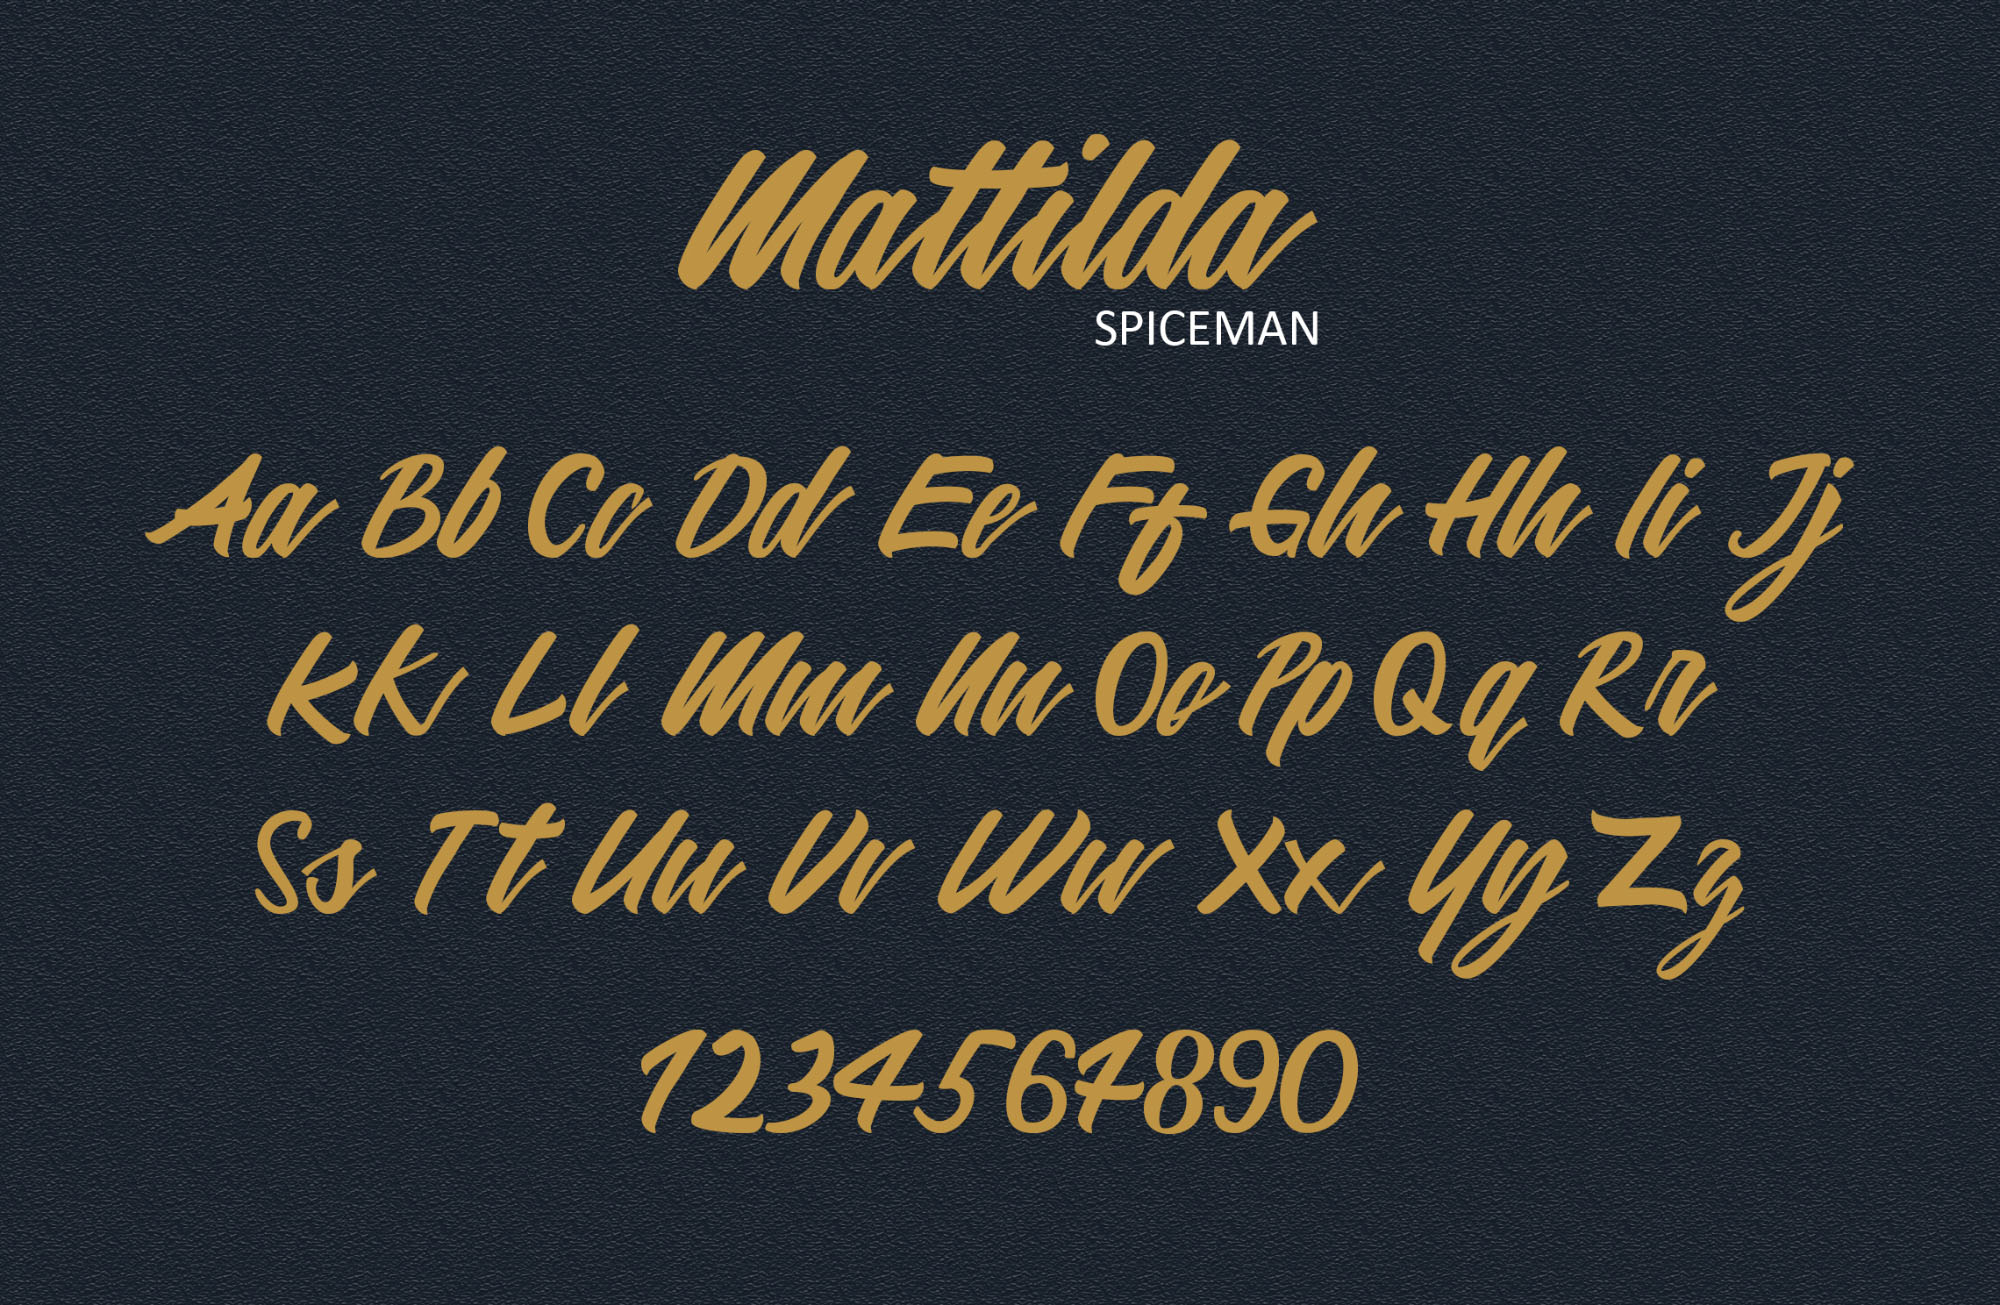 英文画笔连笔艺术字体16图库精选 Mattilda Script Font插图(2)